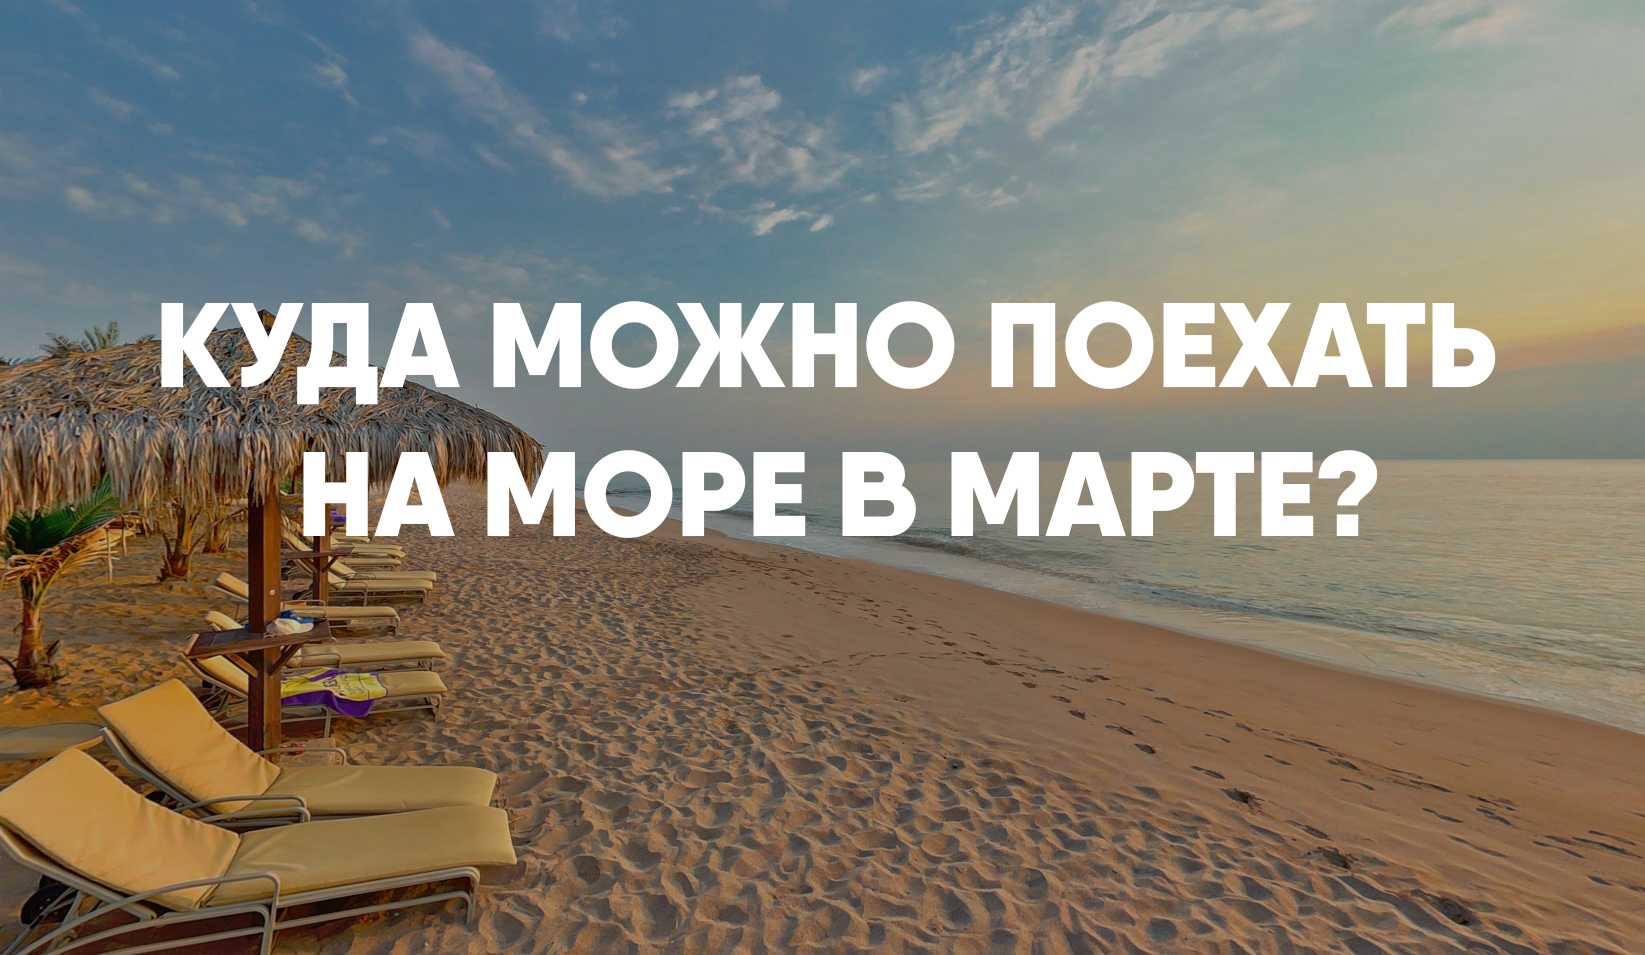 Куда поехать в россии летом: море, горы, лучшие города